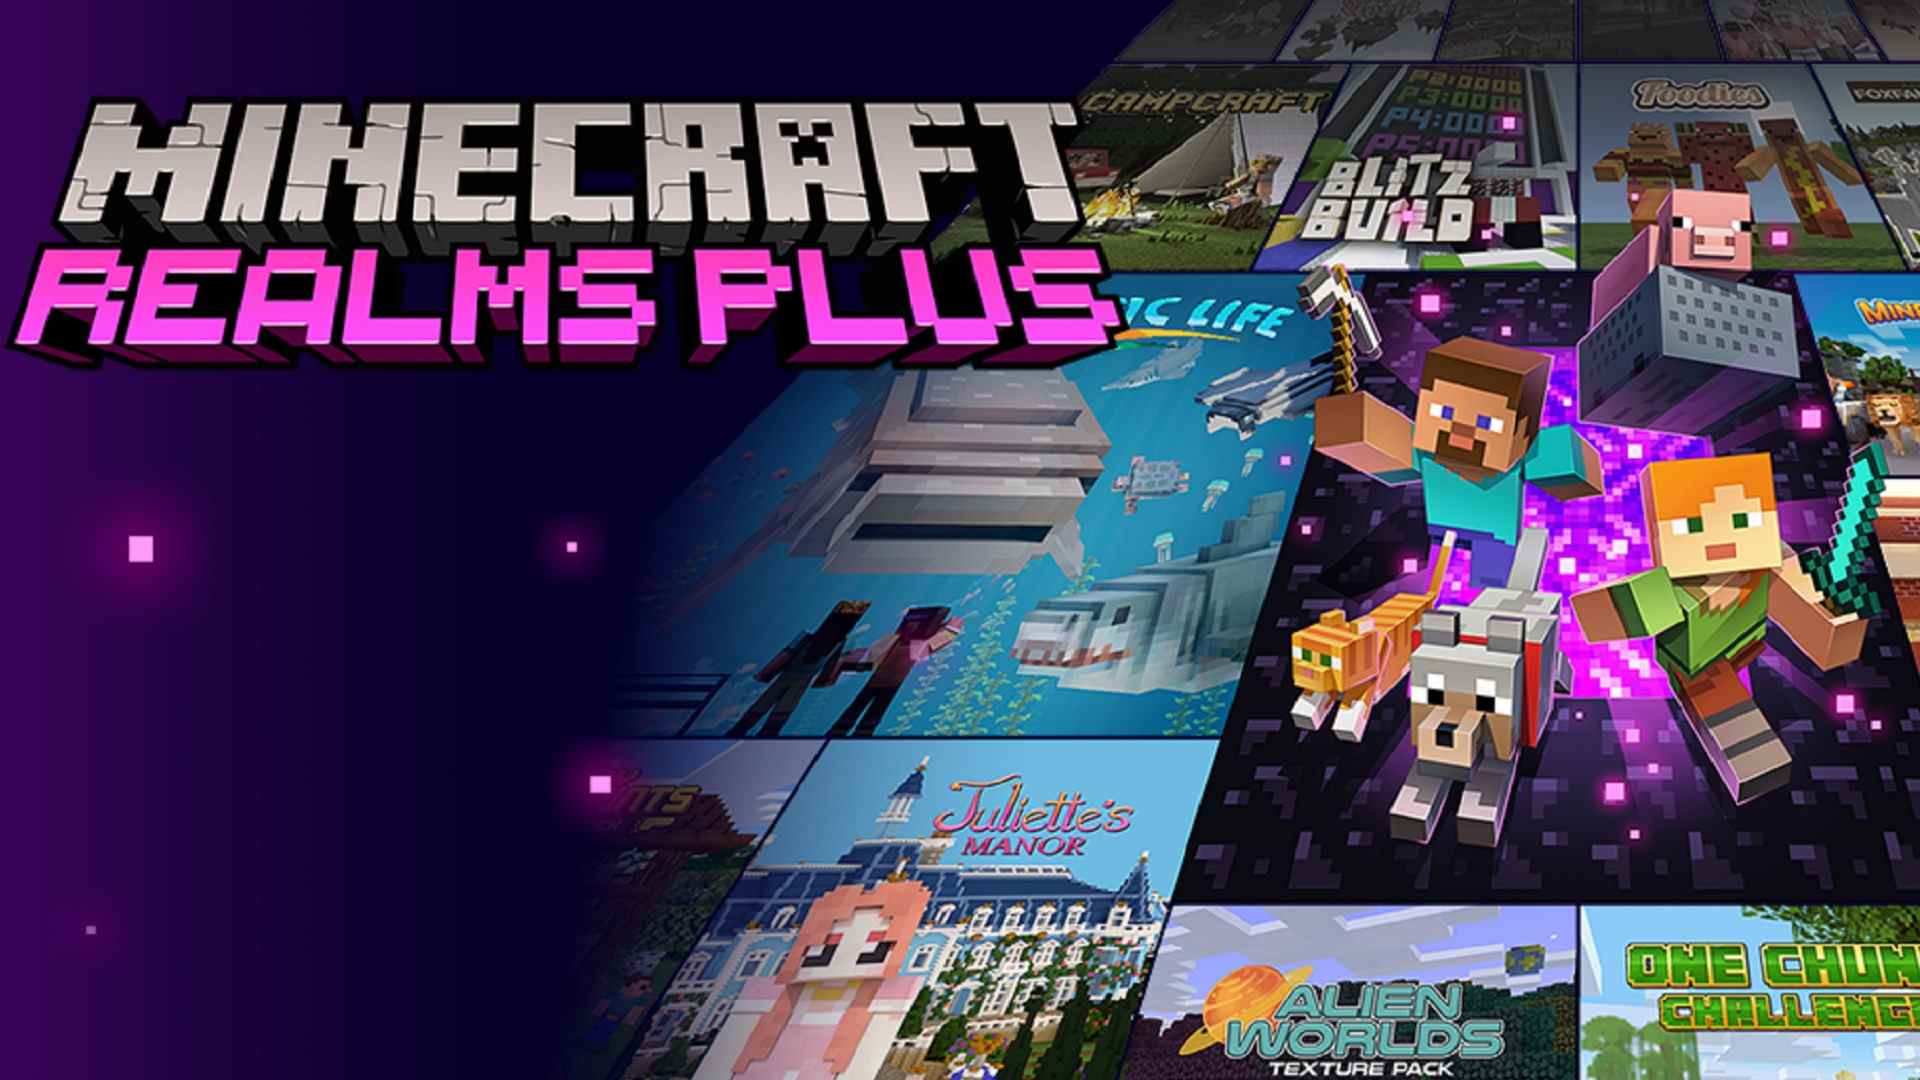 Hébergement Minecraft : L'écran de démarrage pour Minecraft Realms Plus, y compris des exemples de contenu de leur marché tels que Juliette's Manor, Aquatic Life, Alien Worlds, et plus encore.